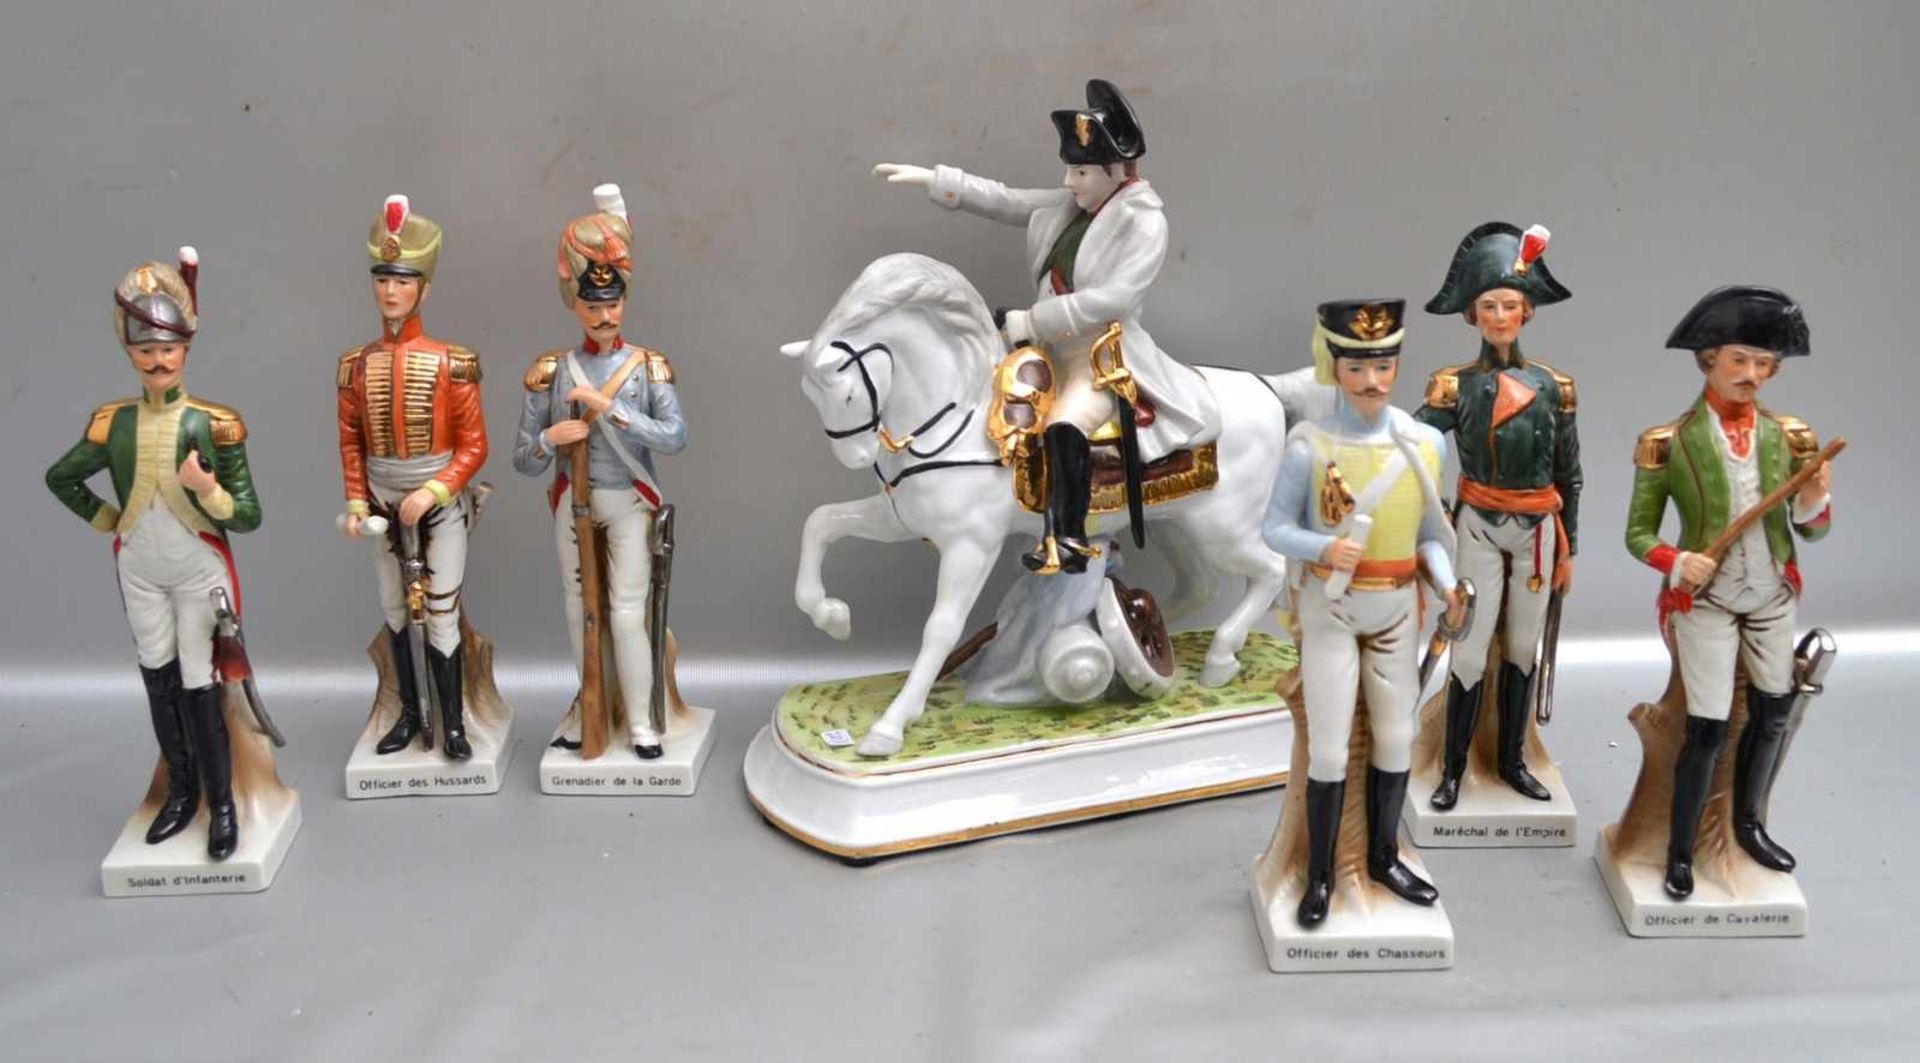 Napoleon zu Pferd und sechs Soldaten auf Sockel stehend, H 27 cm, die Soldaten tragen verschiedene